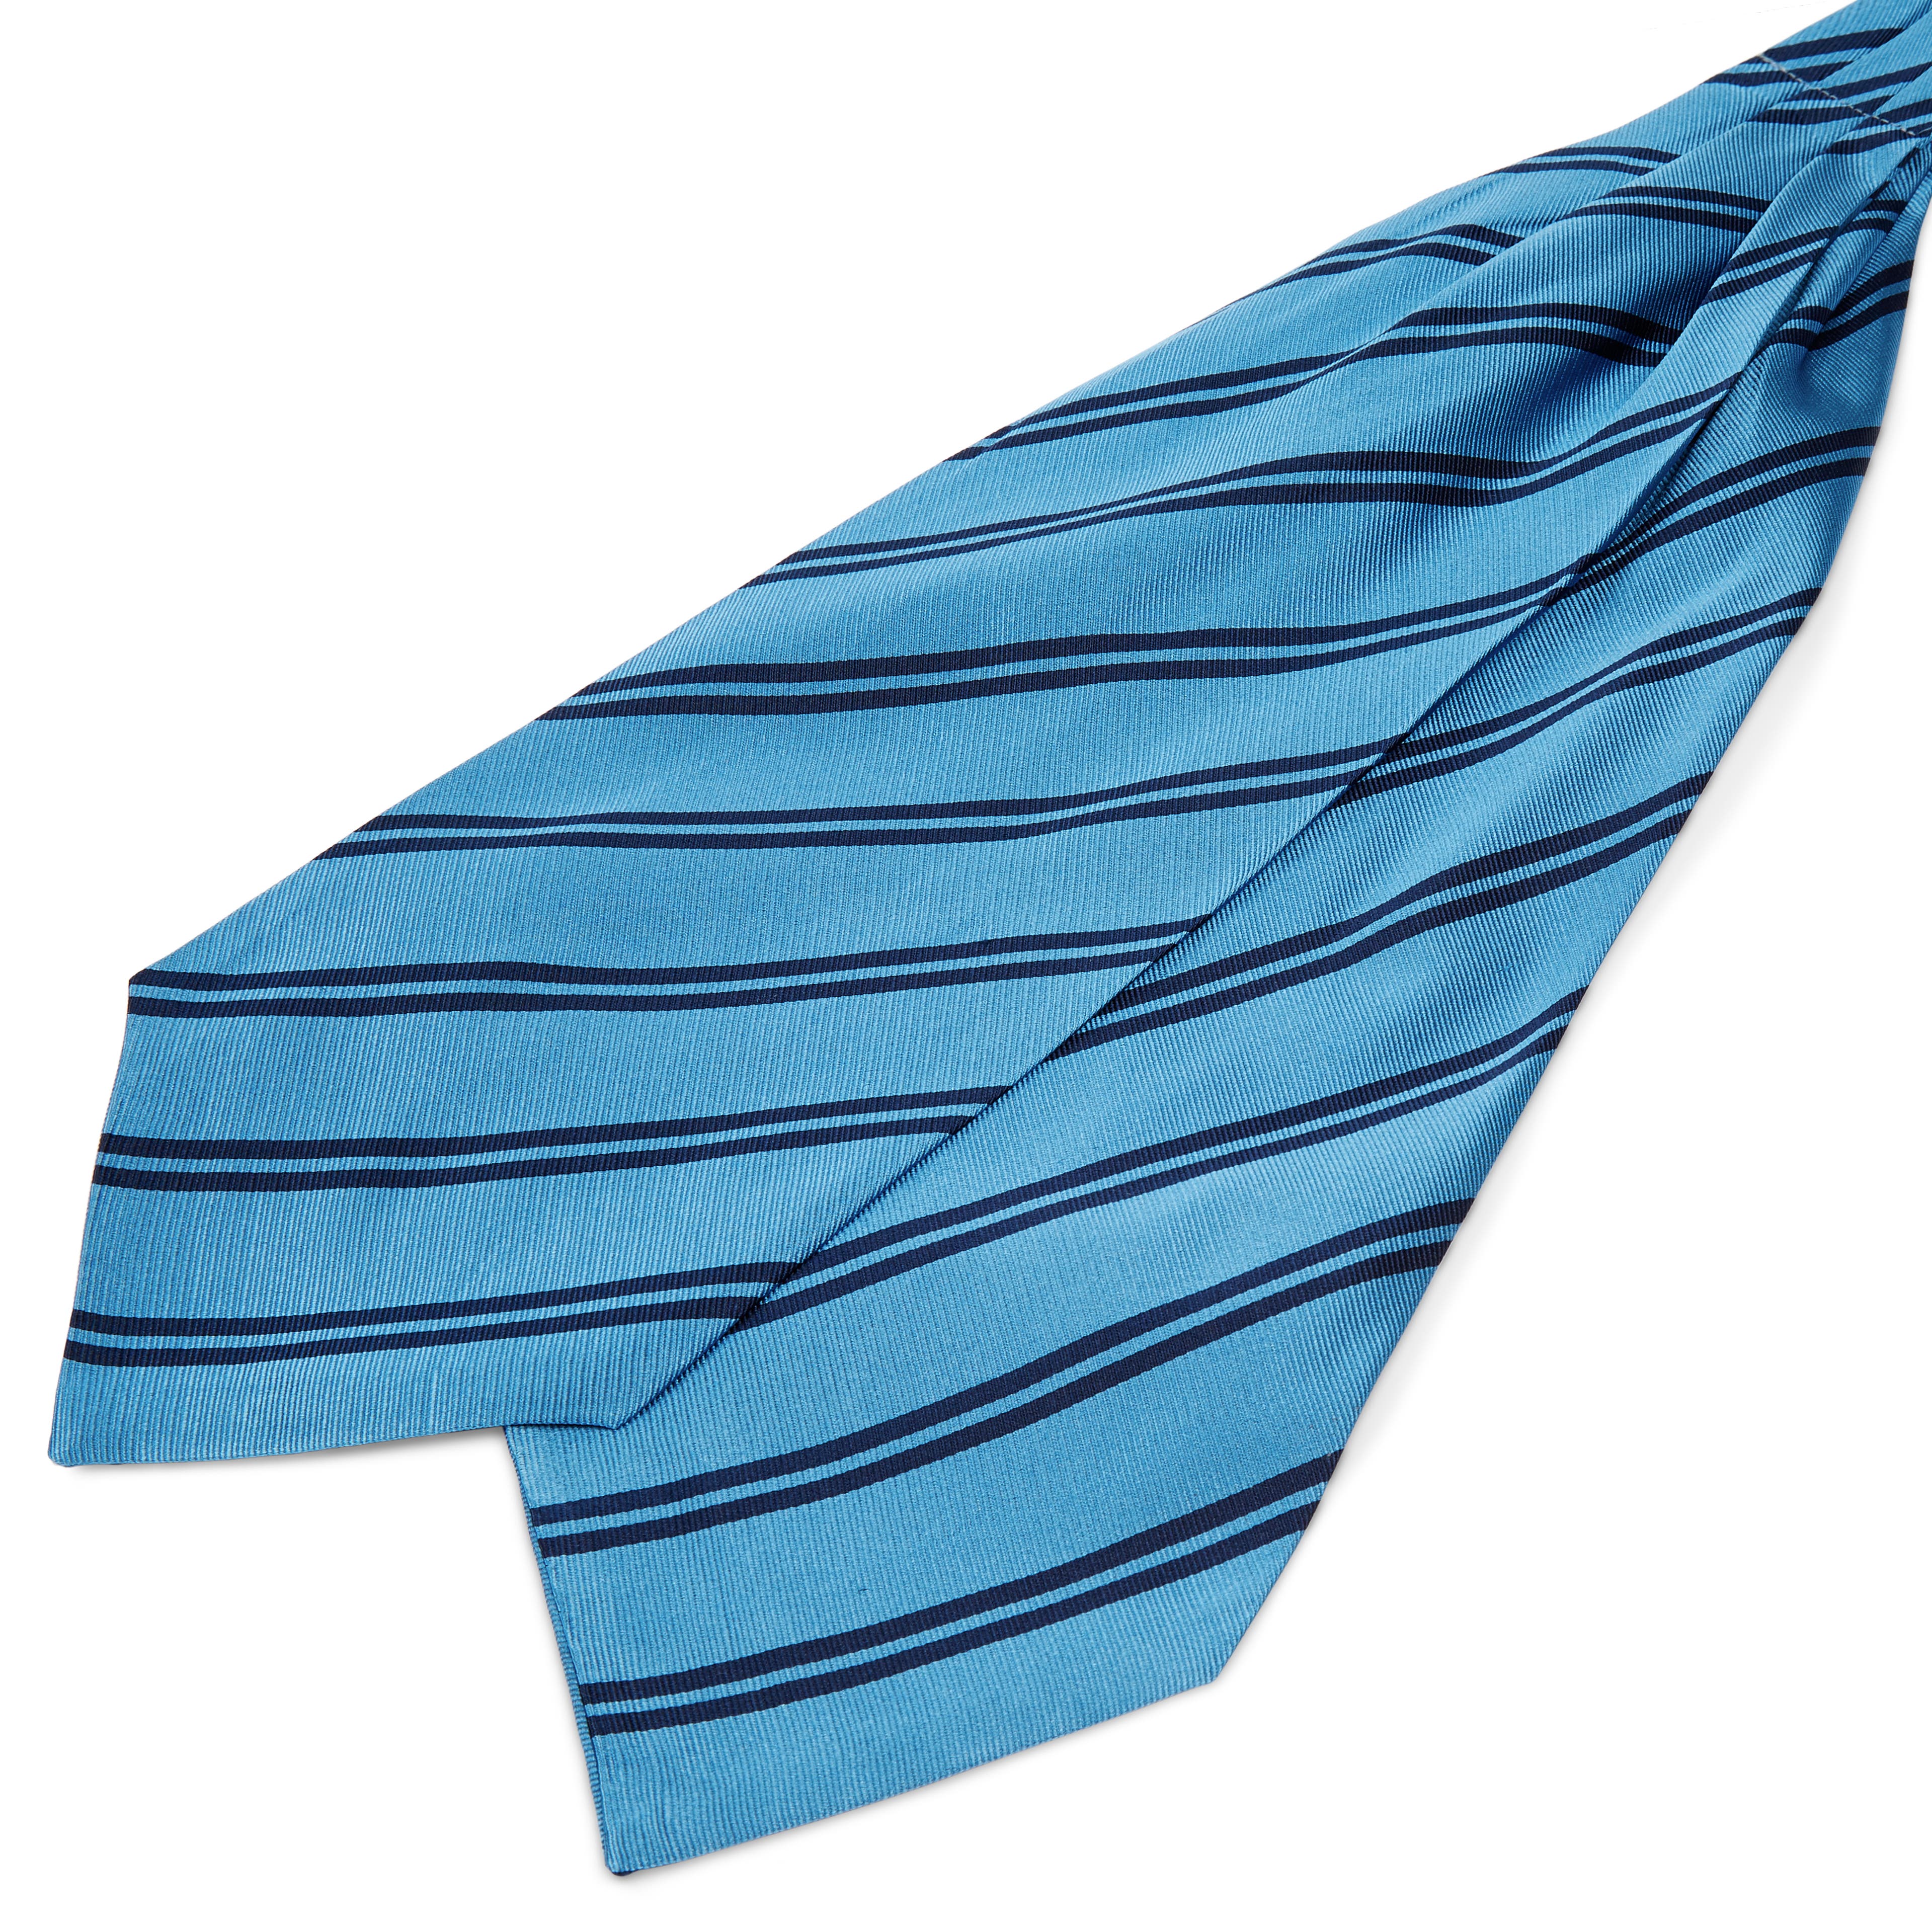 Cravată din mătase albastră cu dungi duble bleumarin